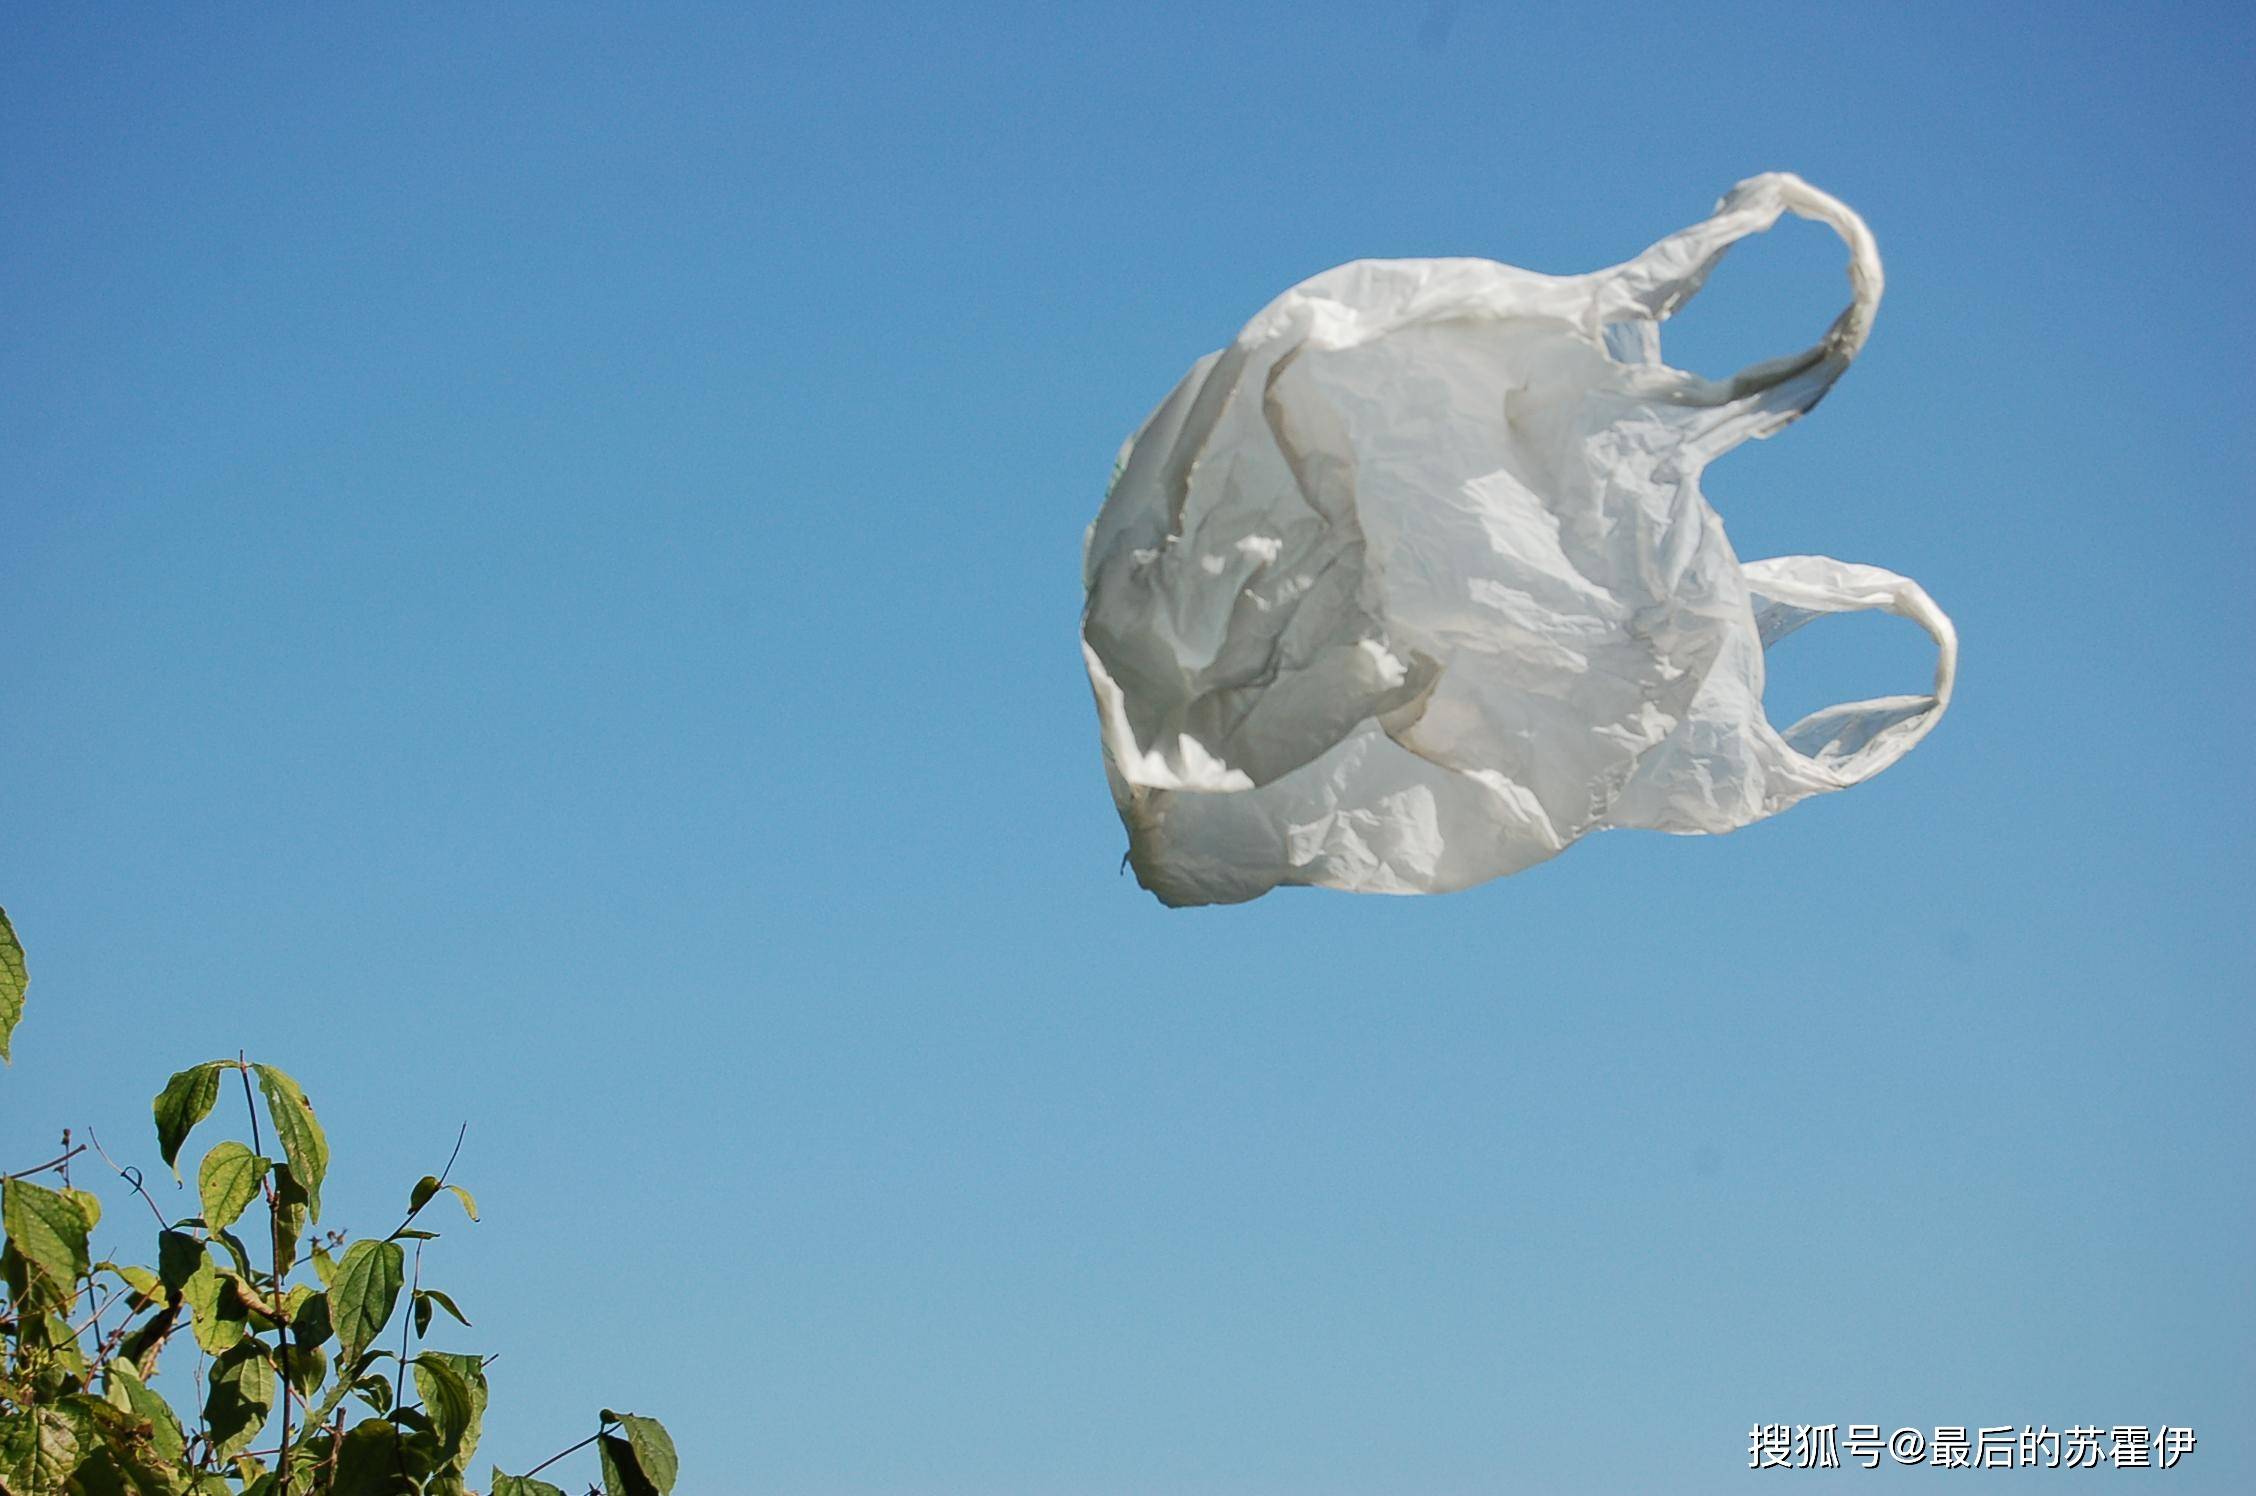 飞机起降的时候,会害怕塑料袋?发动机一旦吸入会有什么后果?